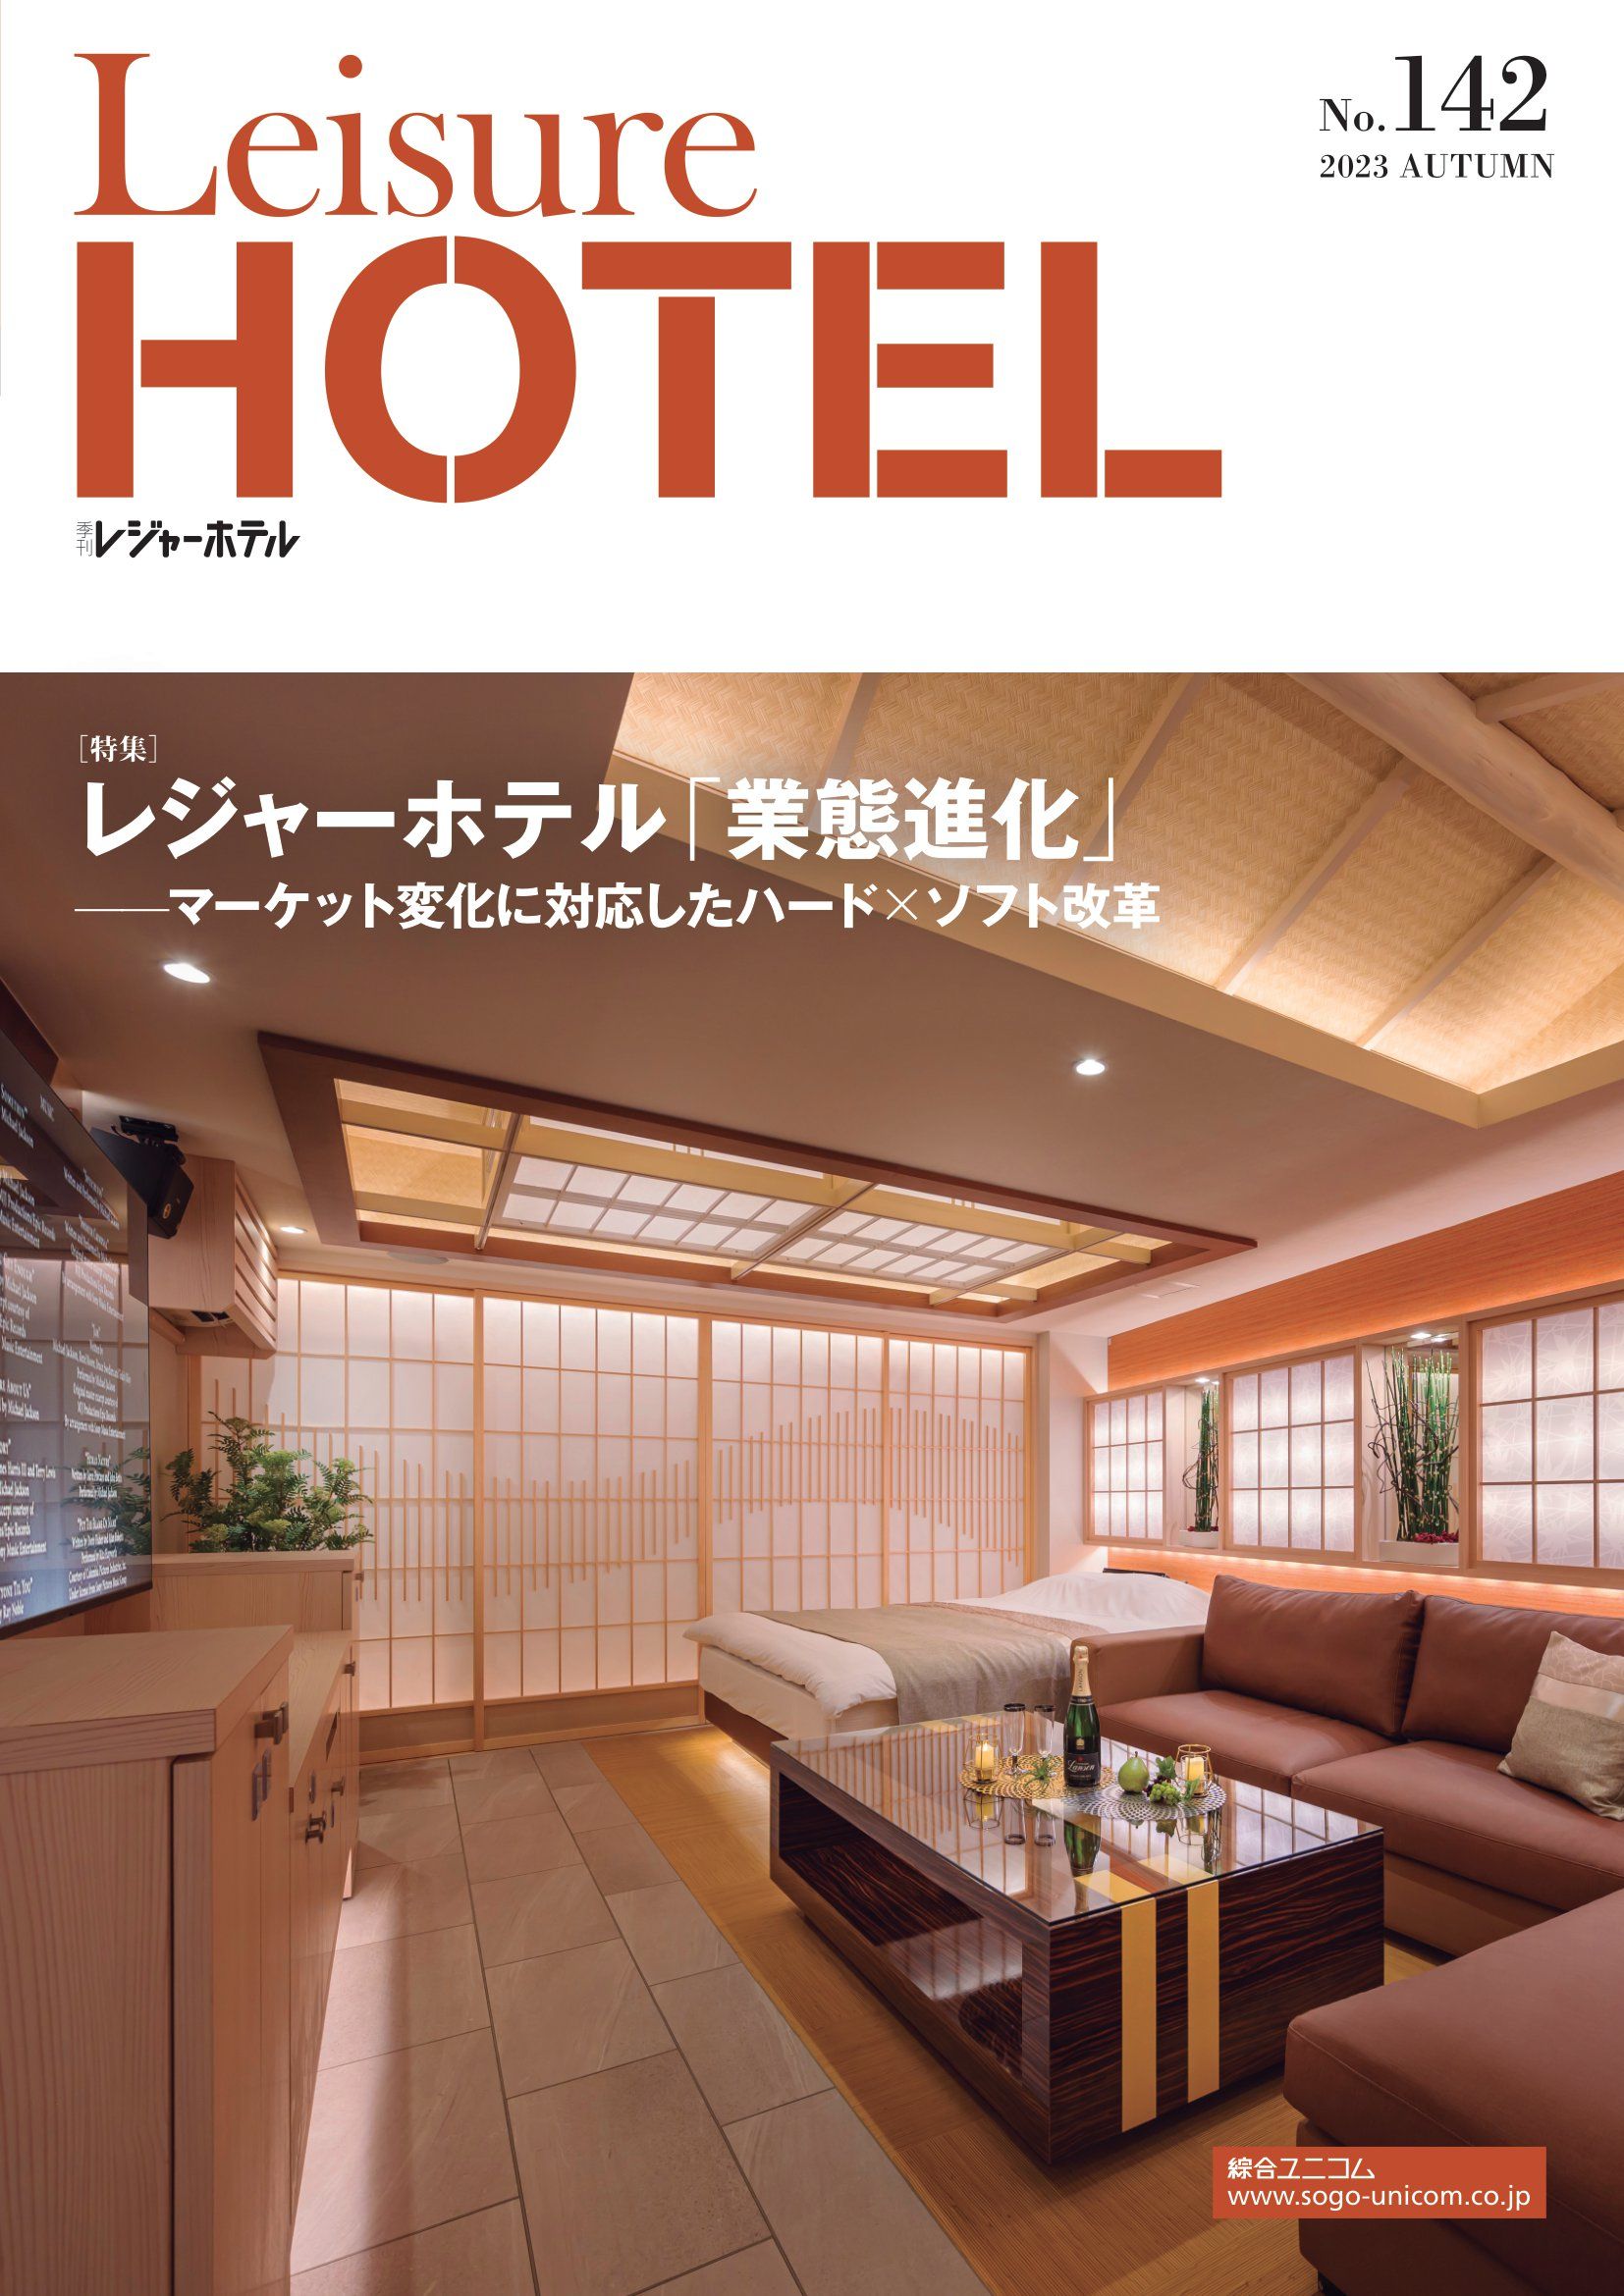 季刊 レジャーホテル No.142
